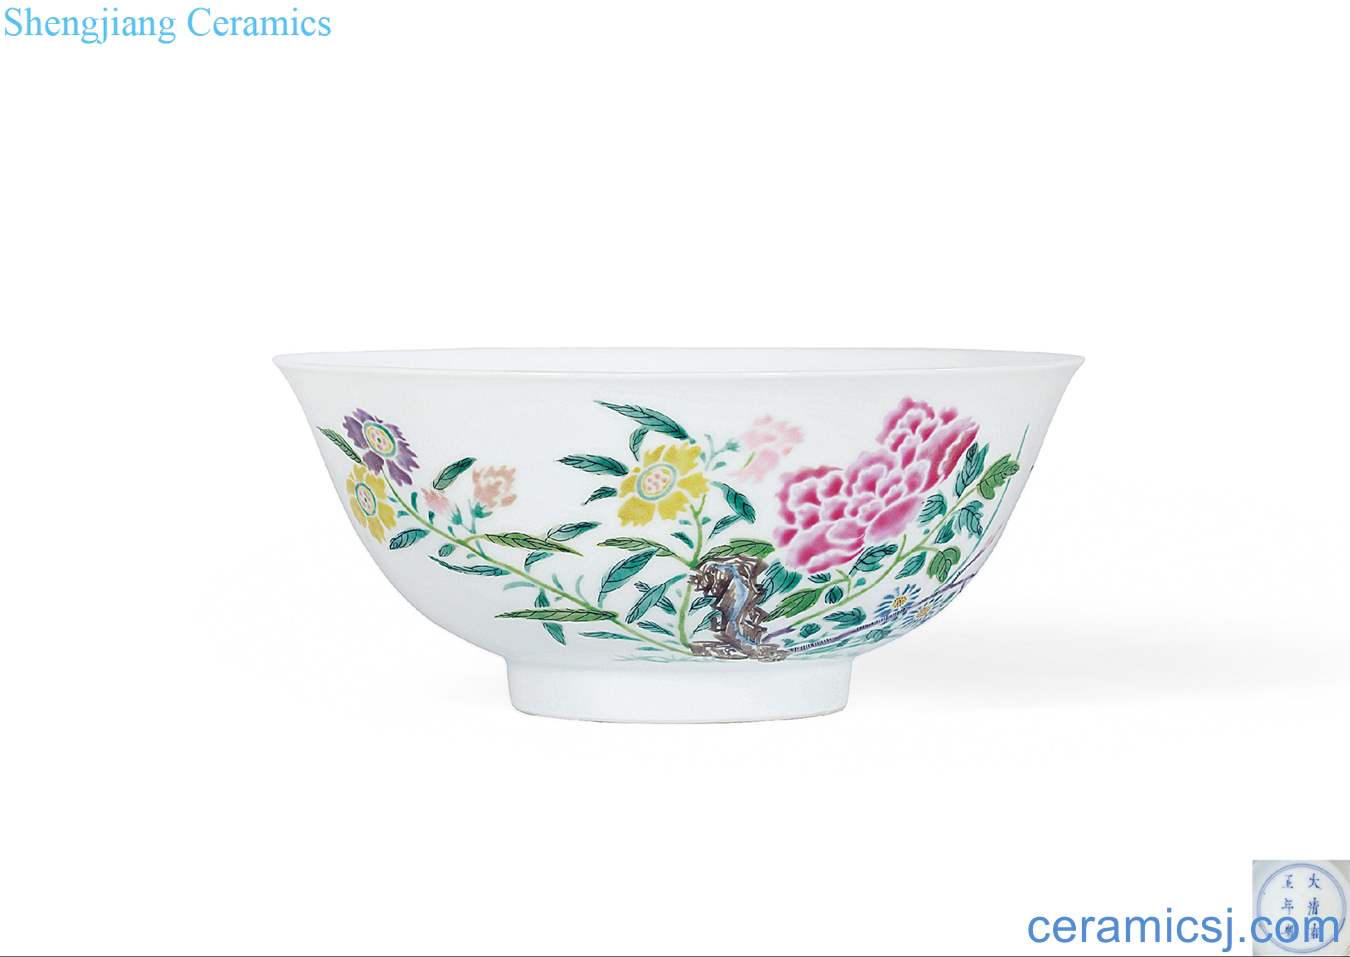 Qing yongzheng pastel flowers green-splashed bowls